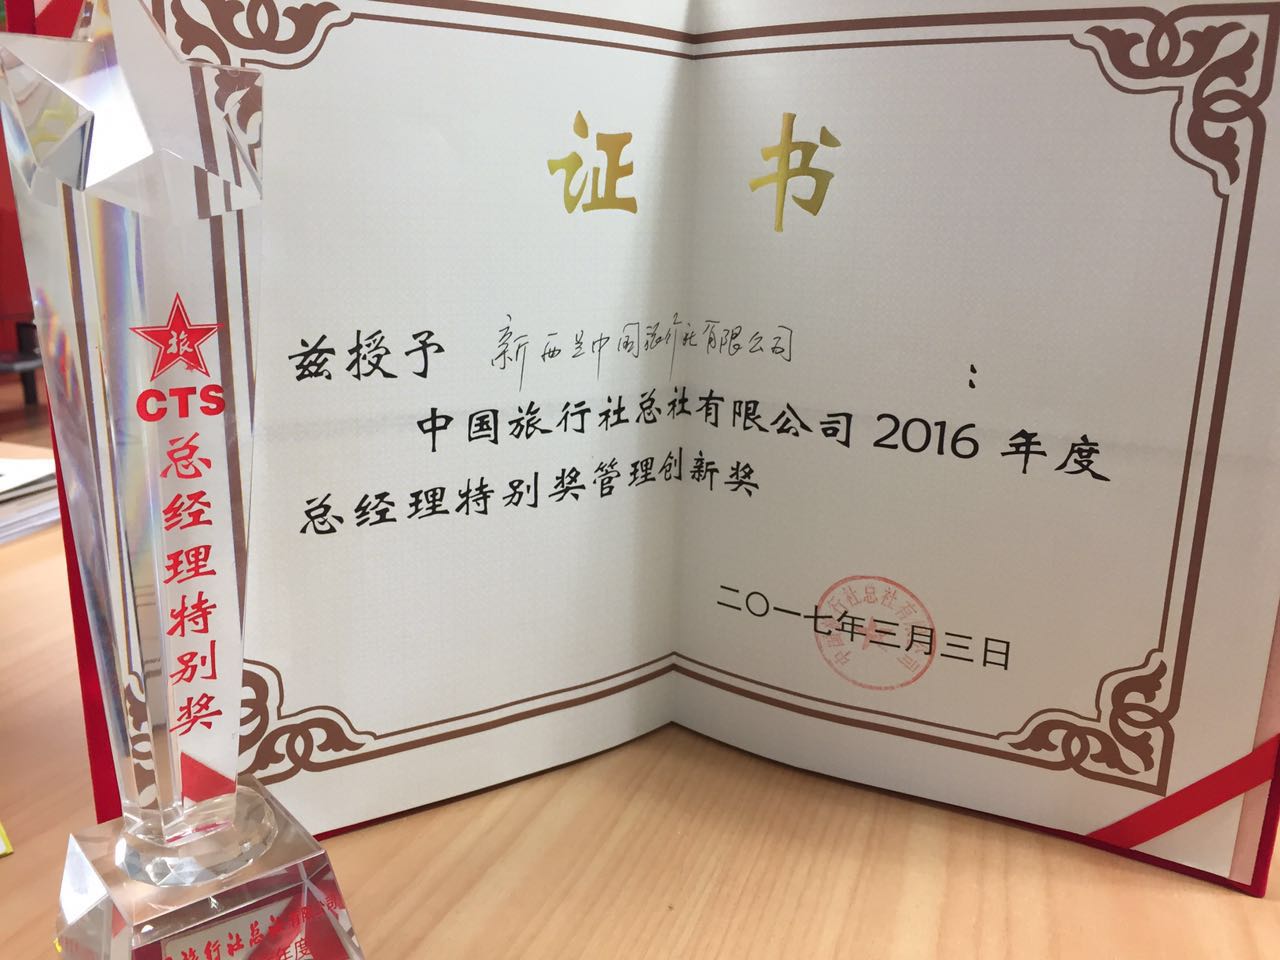 2016年中旅总社颁发总经理管理创新奖.jpg